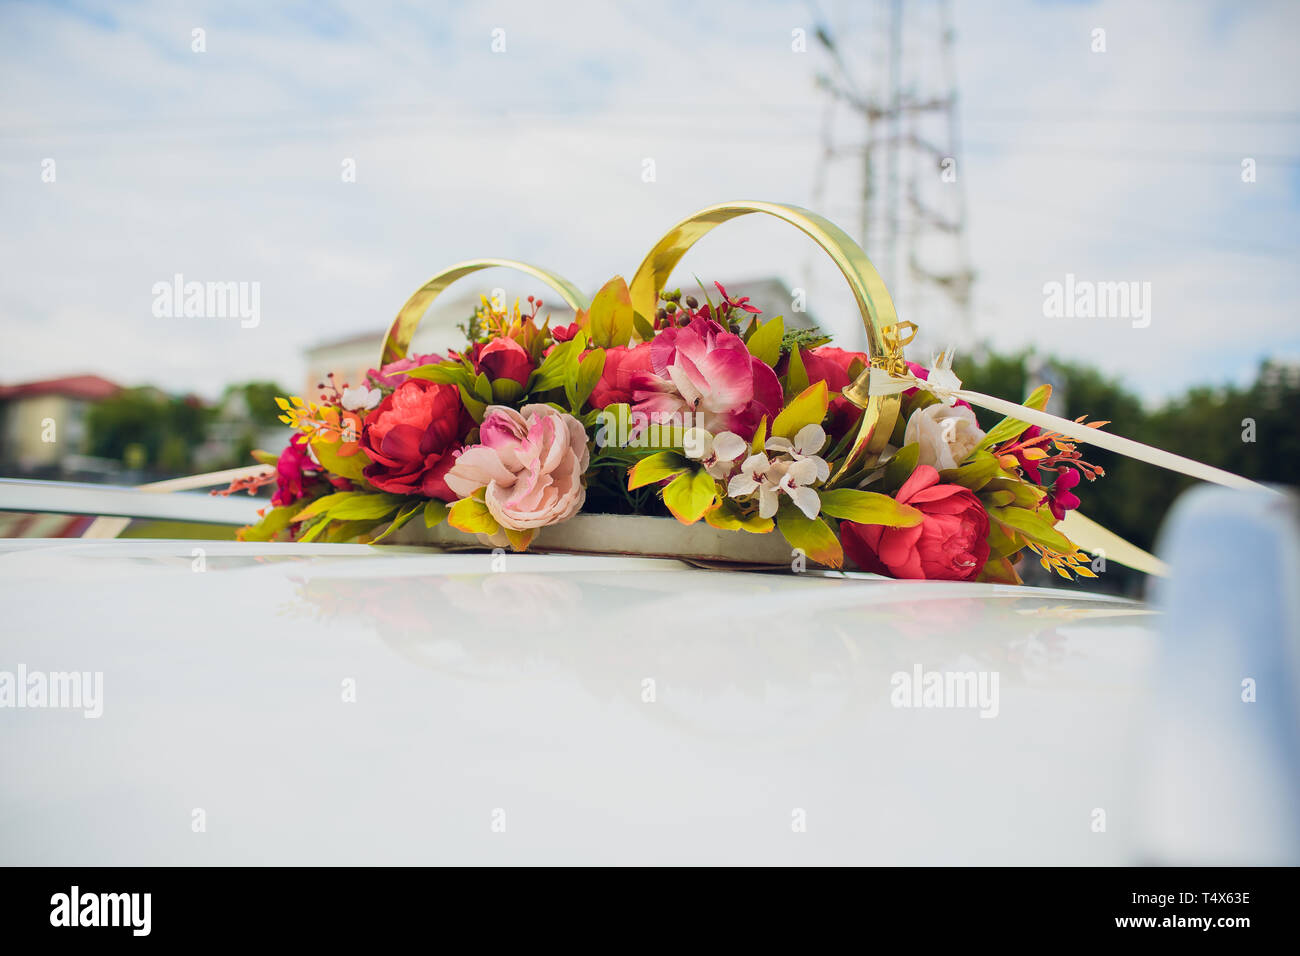 White Wedding Car with Wedding Decorations Flowers Stock Image - Image of  curve, celebration: 125393519